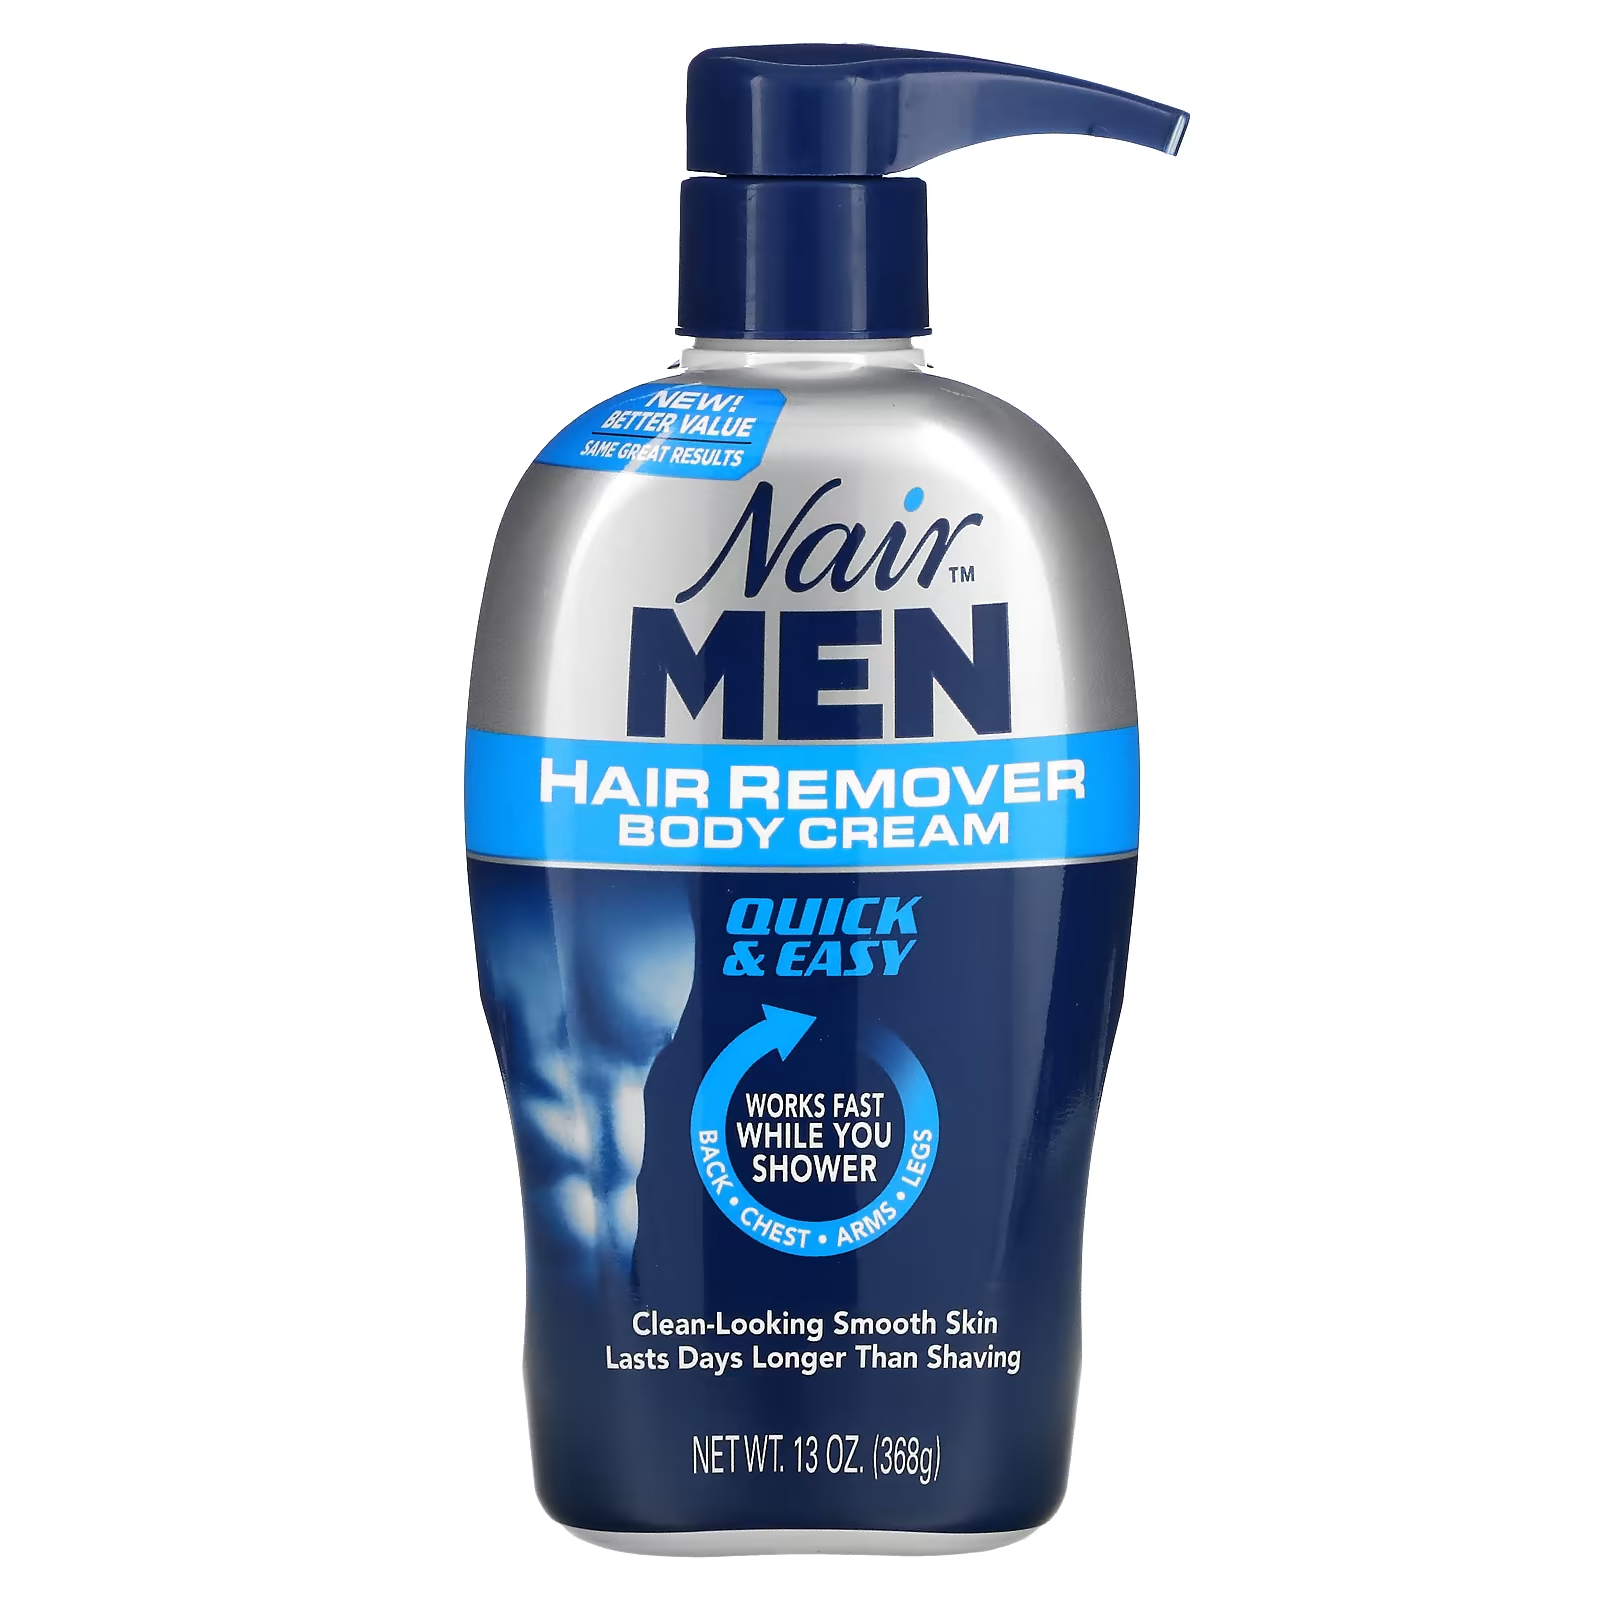 Крем Nair For Men для удаления волос, 368 г средство для удаления волос nair glide on sensitive formula 93 г